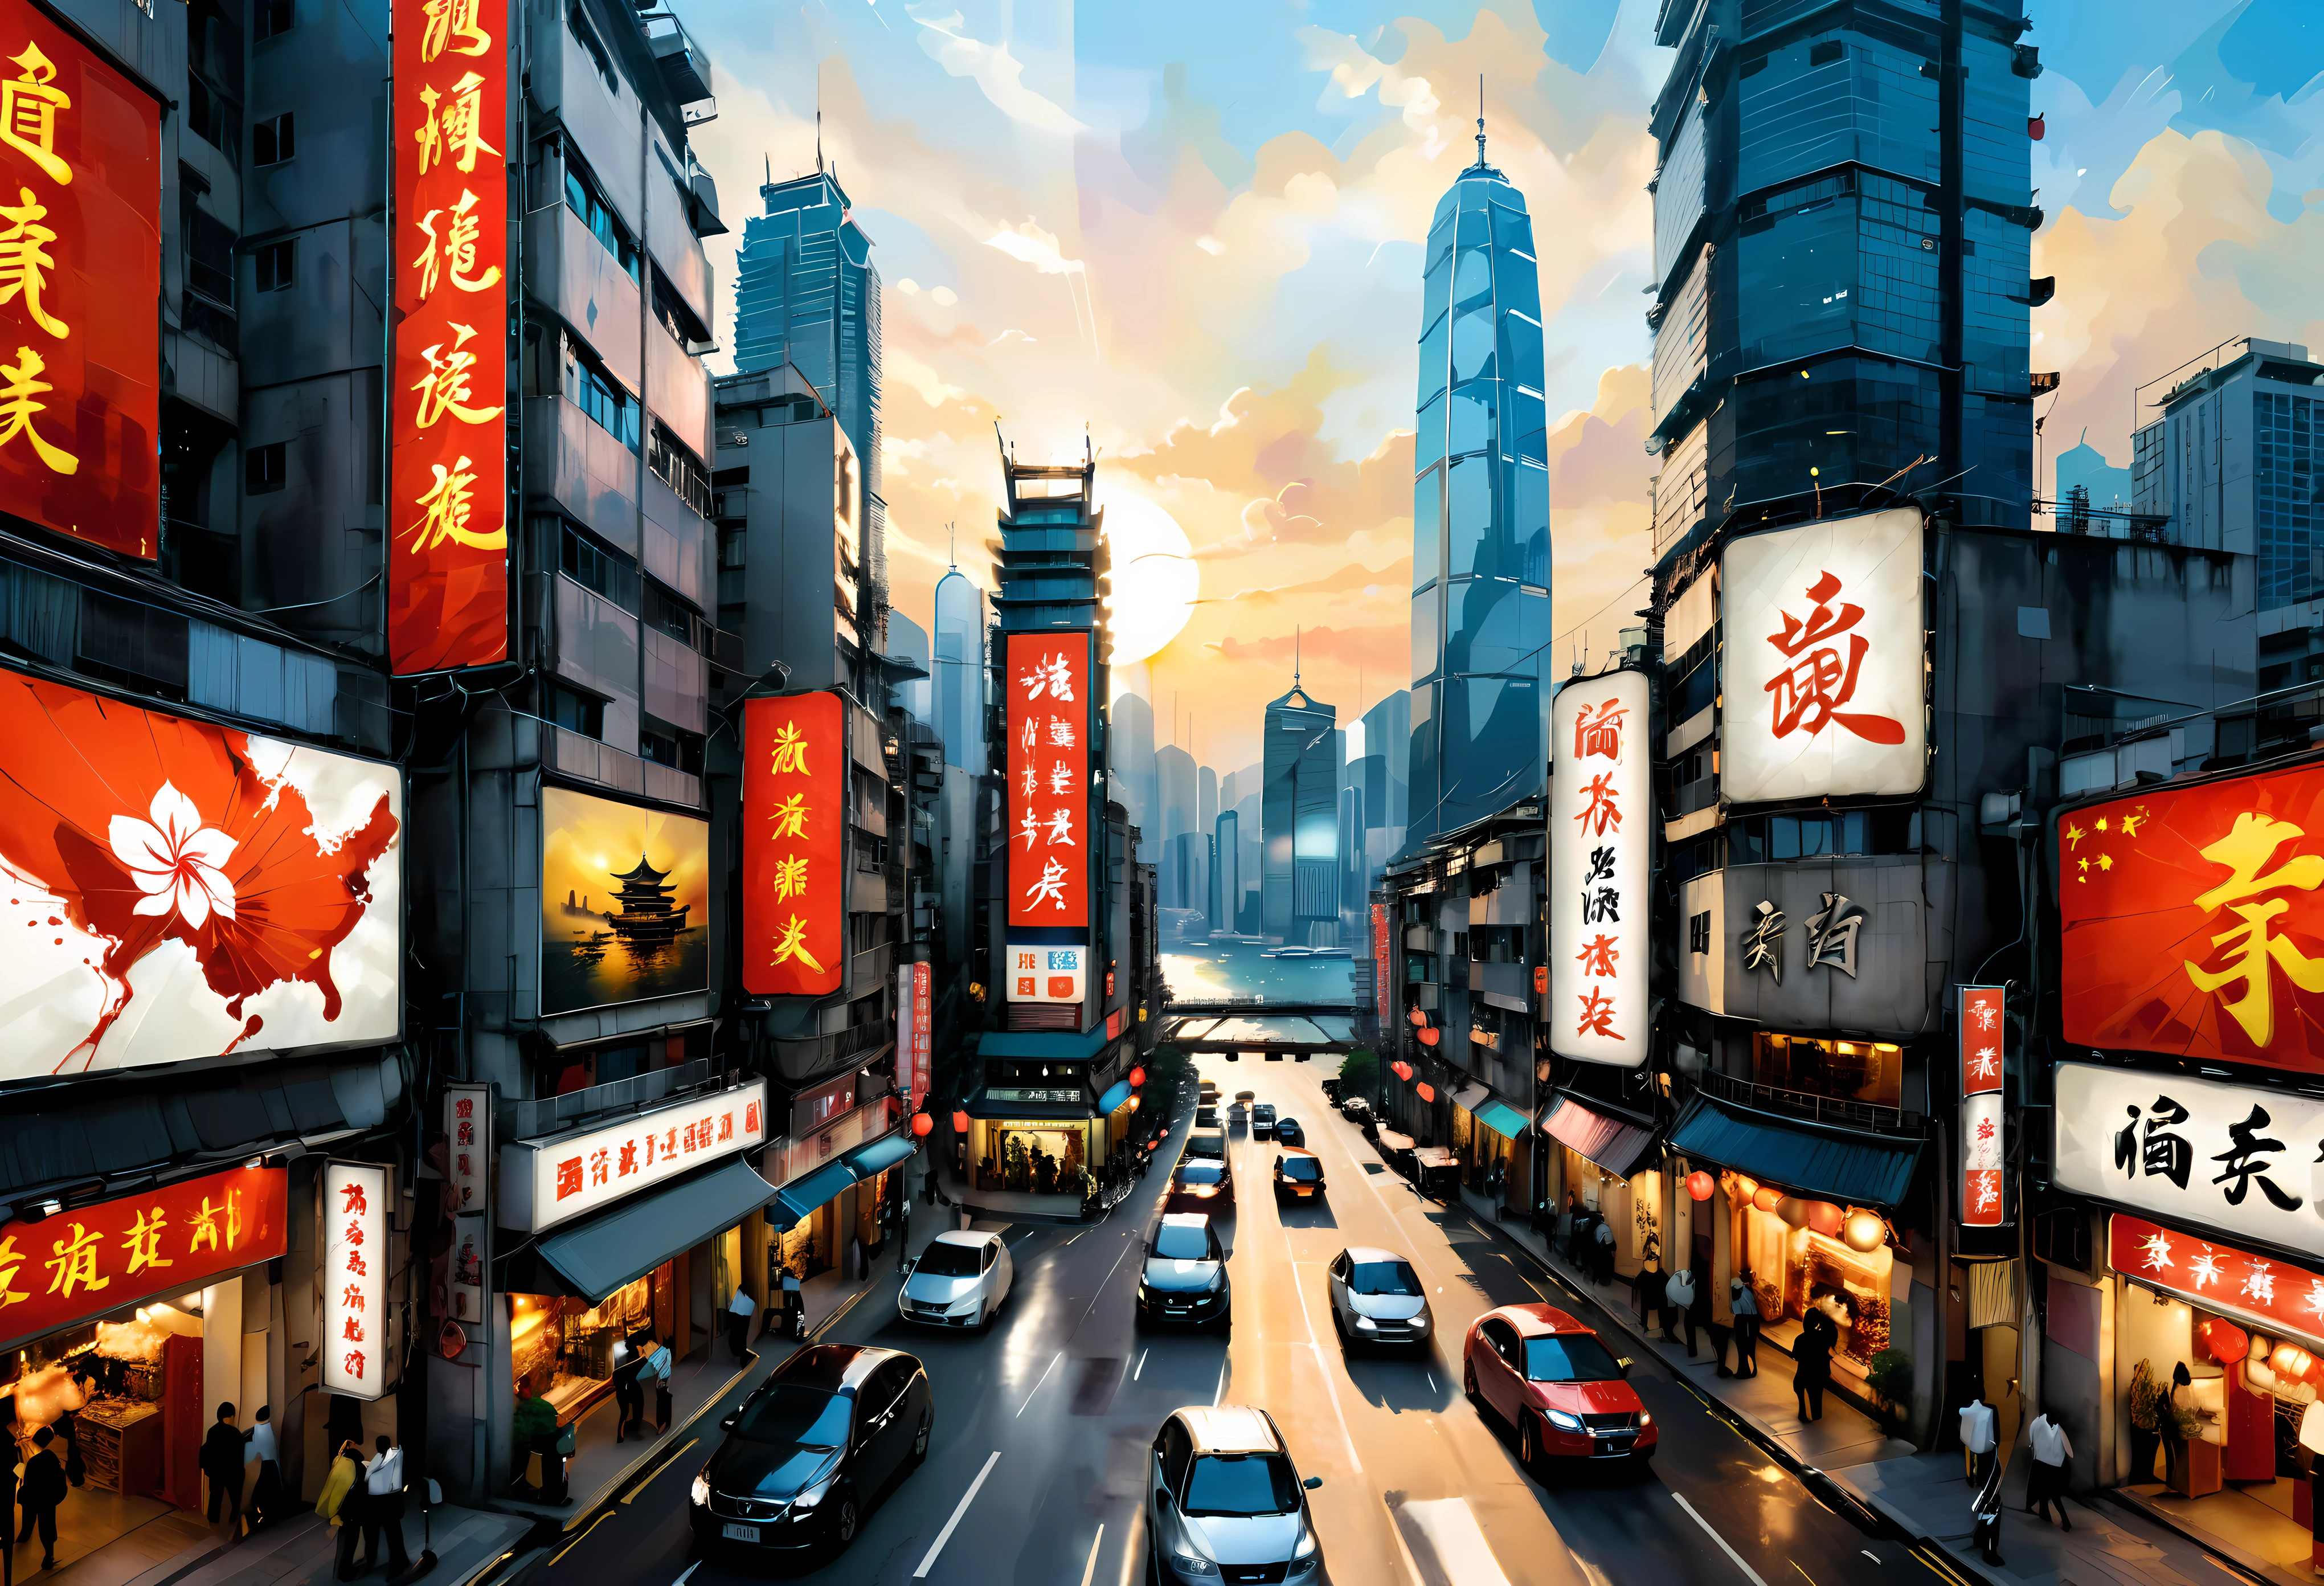 ((Malerei im Wu-Guanzhong-Stil):1.2),((Chinesische Tuschmalerei):1.2),((Westliches Malereikonzept):1.2),((moderne Interpretationen traditioneller Themen)1.1), ((Erstellen einzigartiger visueller Effekte durch Farbe und Linie):1.1),((Luftaufnahme):1.3) | A combination of Chinese ink art and Western painting of Luftaufnahme of Hong Kong modern skyline, (beste Qualität, 4k, highres, Meisterwerk:1.2), ultra-detailliert, (Realistisch, photoRealistisch:1.37), Chinesischer Tuschestil: zarte Striche und Tuschezeichnungen, Westlicher Malstil: lebendige Farben und Pinselstriche, Die ikonischen Wolkenkratzer der Skyline von Hongkong, belebte Straßen voller Menschen und Autos, Der prächtige Victoria Harbour ist in goldenes Sonnenlicht getaucht, Traditionelle chinesische Boote segeln im Hafen, Neonlichter erhellen den Nachthimmel, Mischung aus traditioneller und moderner Architektur, Traditionelle chinesische Kalligraphie mit Straßenschildern und Werbetafeln, Verschmelzung chinesischer und westlicher Kulturelemente in Kleidung und Mode, Mischung aus chinesischer und englischer Sprache in Straßenschildern und Ladennamen, dramatische Perspektive von einem hohen Aussichtspunkt, der die Vertikalität der Stadt zeigt, Zusammenspiel von Licht und Schatten, das die Tiefe und Dimension des Gemäldes verstärkt, kontrastierende Texturen aus Beton, glass, und Natur im Stadtbild, subtile Einbeziehung chinesischer Symbole und Motive, die Glück darstellen, Wohlstand, und Harmonie, eindringliches Erlebnis, das den Zuschauer in die vielfältige und lebendige Atmosphäre Hongkongs entführt.